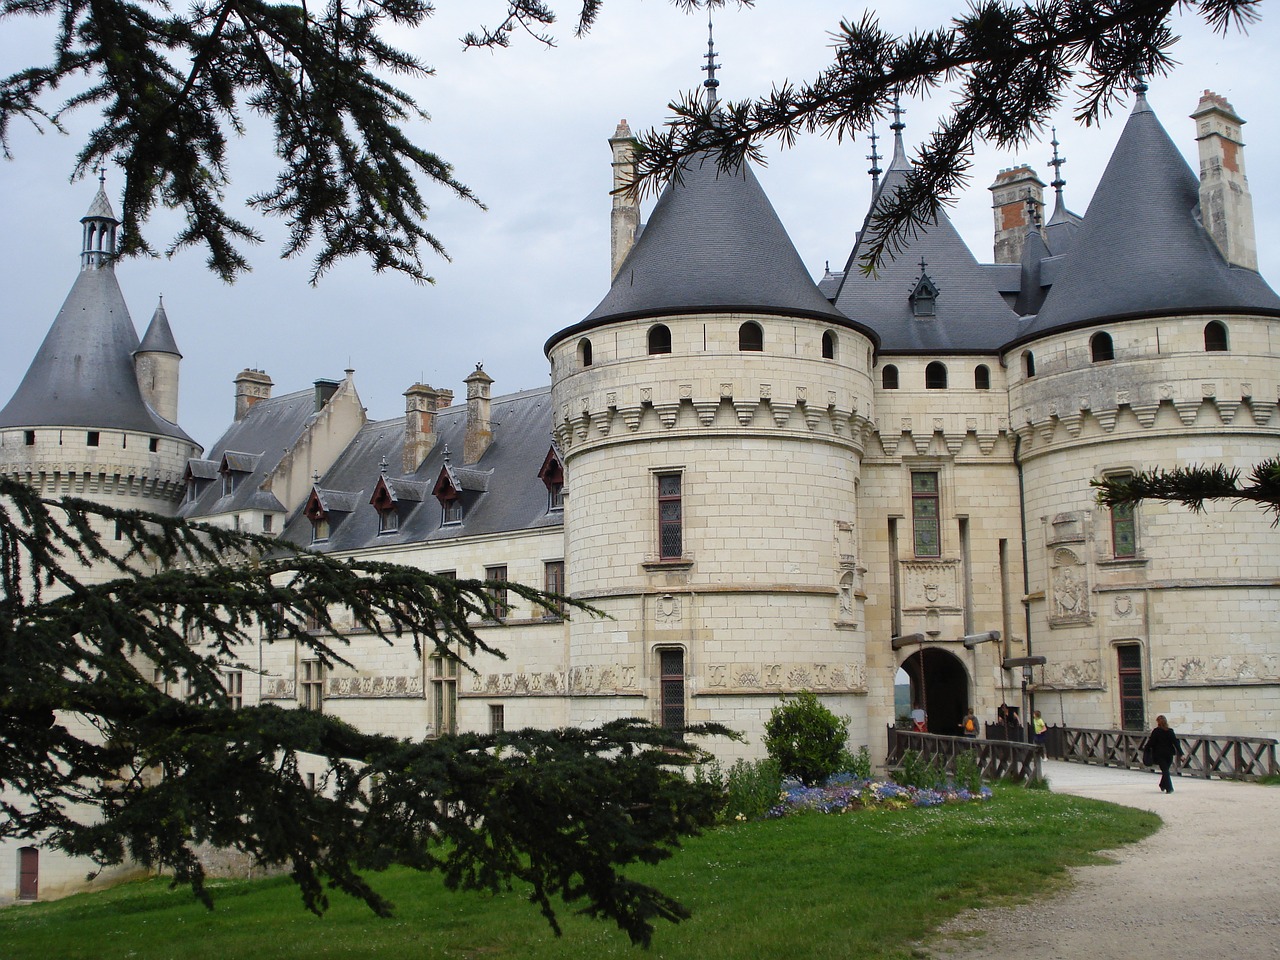 chaumont-sur-loire castle historical heritage free photo